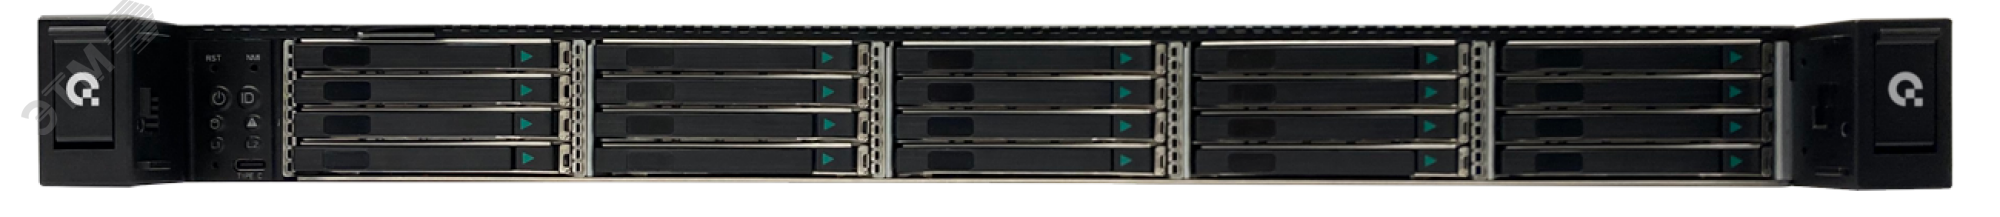 Сервер для предприятий и ЦОД D120AC 1U, Xeon Scalable v3, до 20 накопителей, ОЗУ до 8 ТБ DDR4 T50 D120AC Aquarius - превью 3